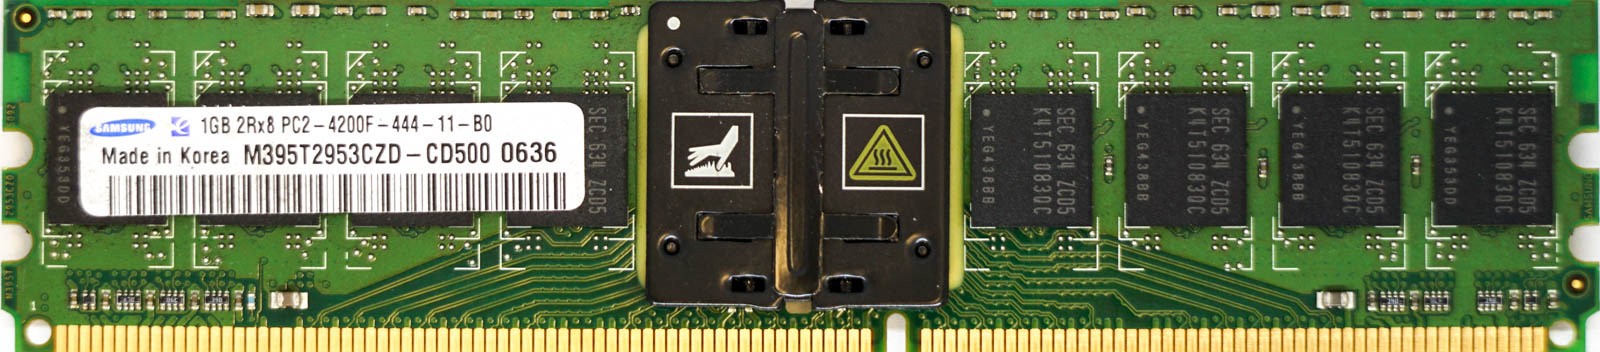 Samsung - 1GB PC2-4200F (DDR2-533Mhz, 2RX8)